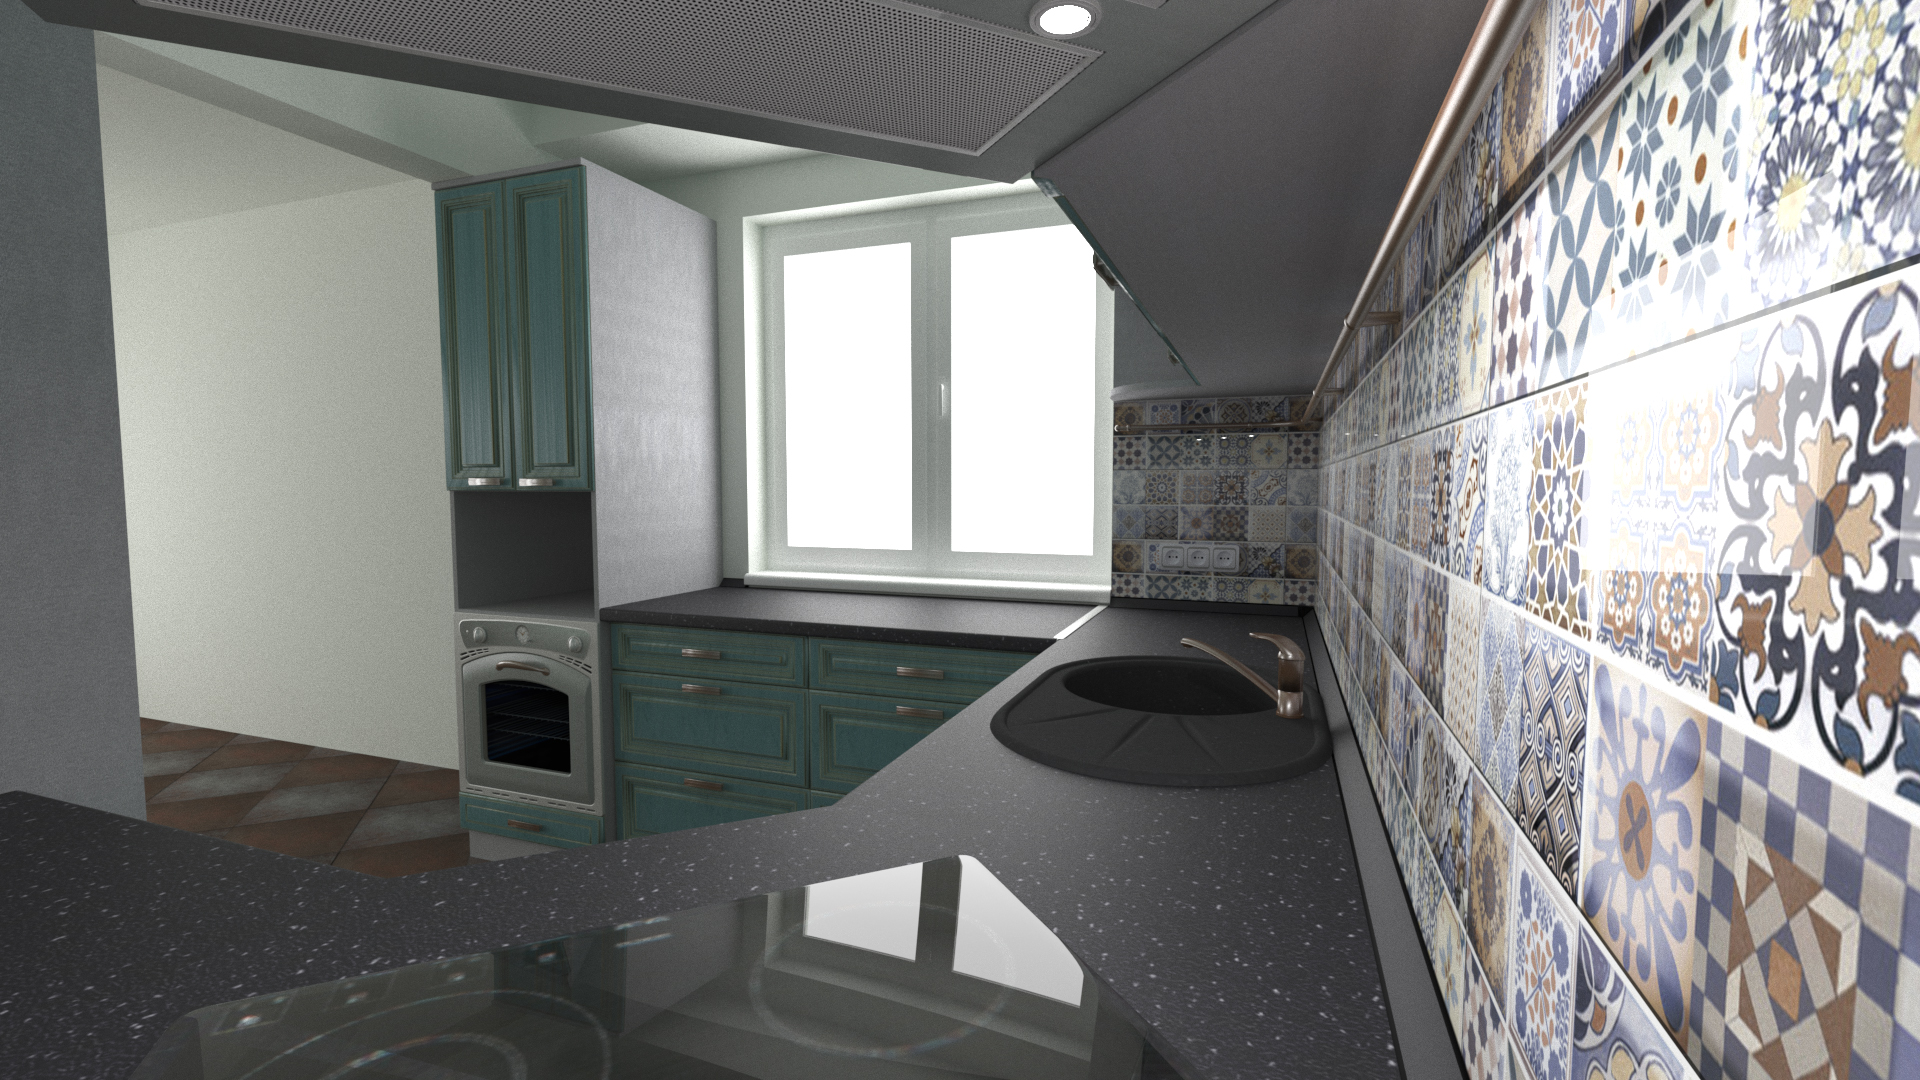 La cuisine dans la maison chasnom dans 3d max corona render image